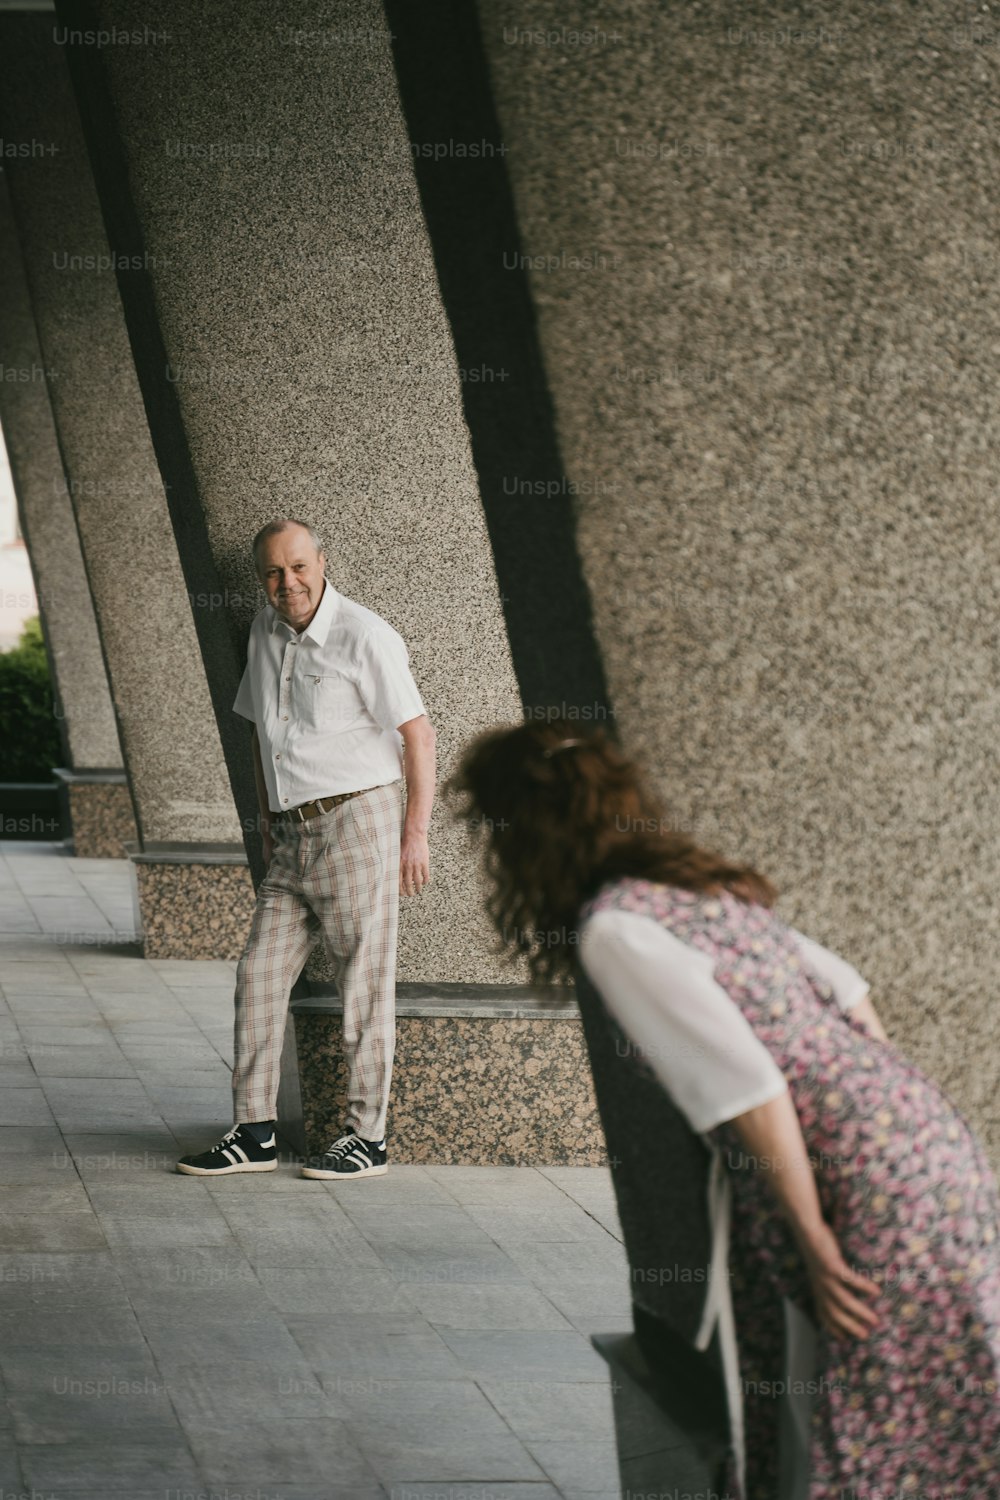 un homme debout à côté d’une femme sur un trottoir